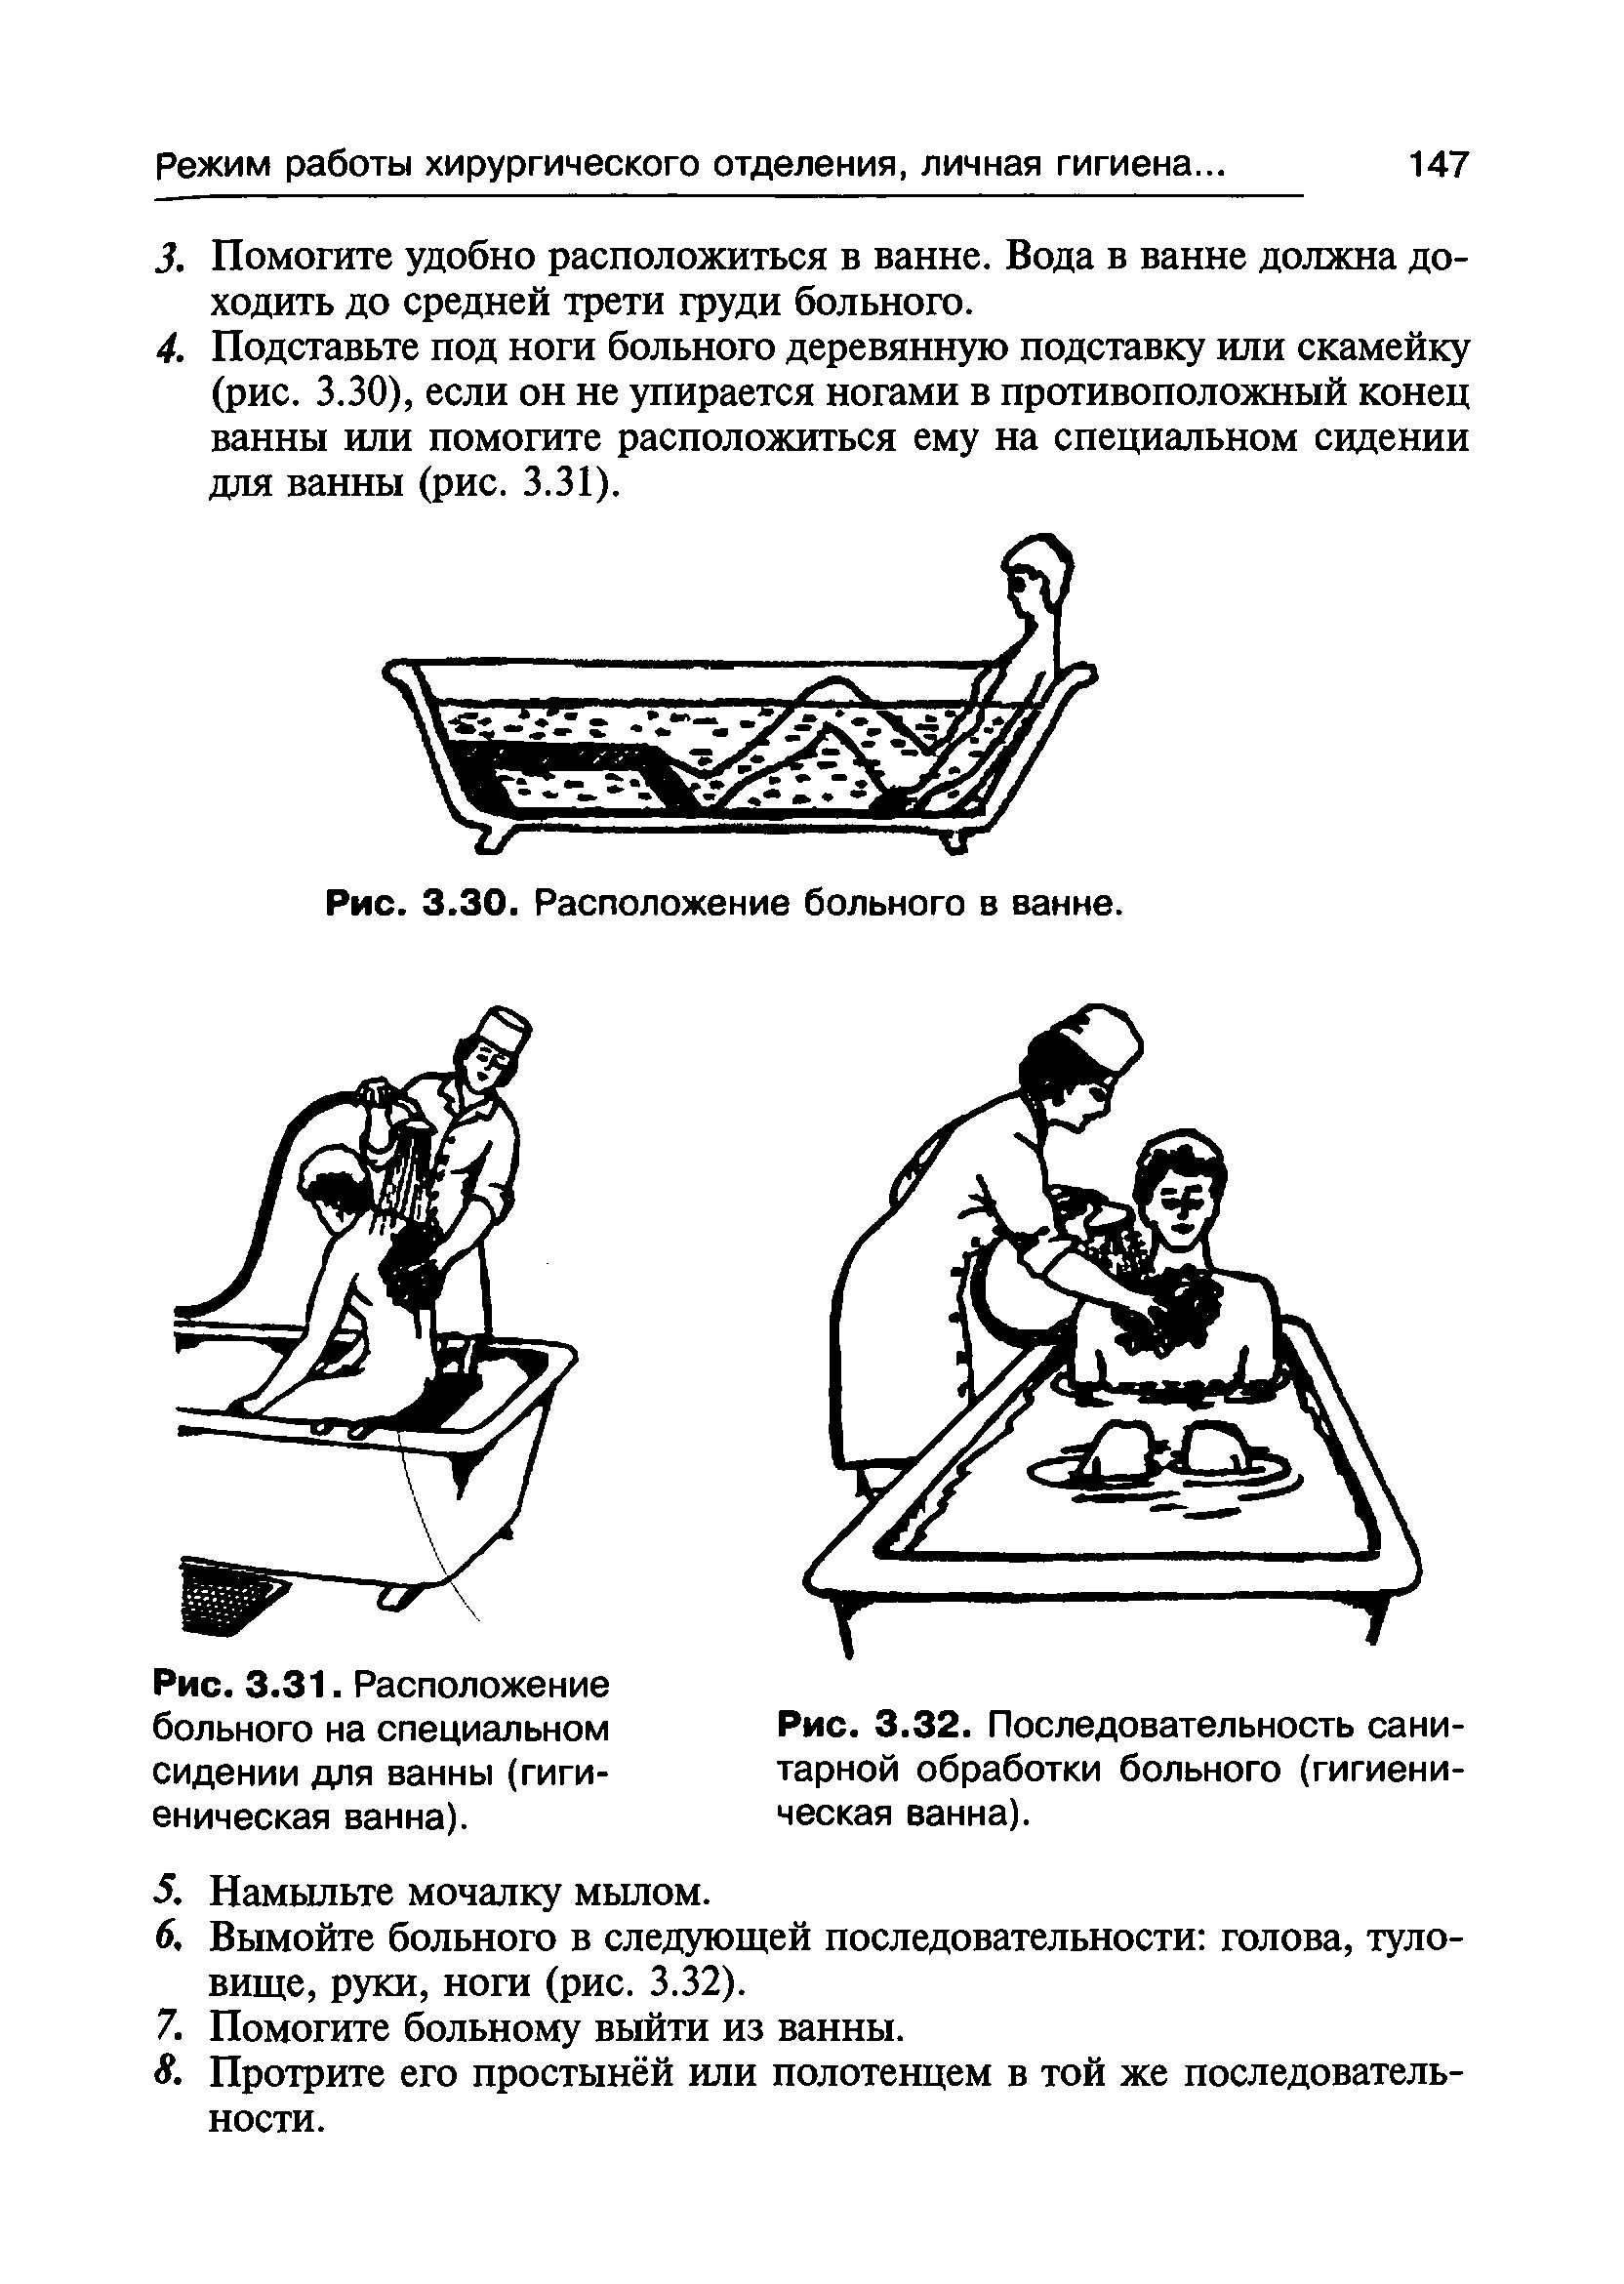 Рис. 3.32. Последовательность санитарной обработки больного (гигиеническая ванна).